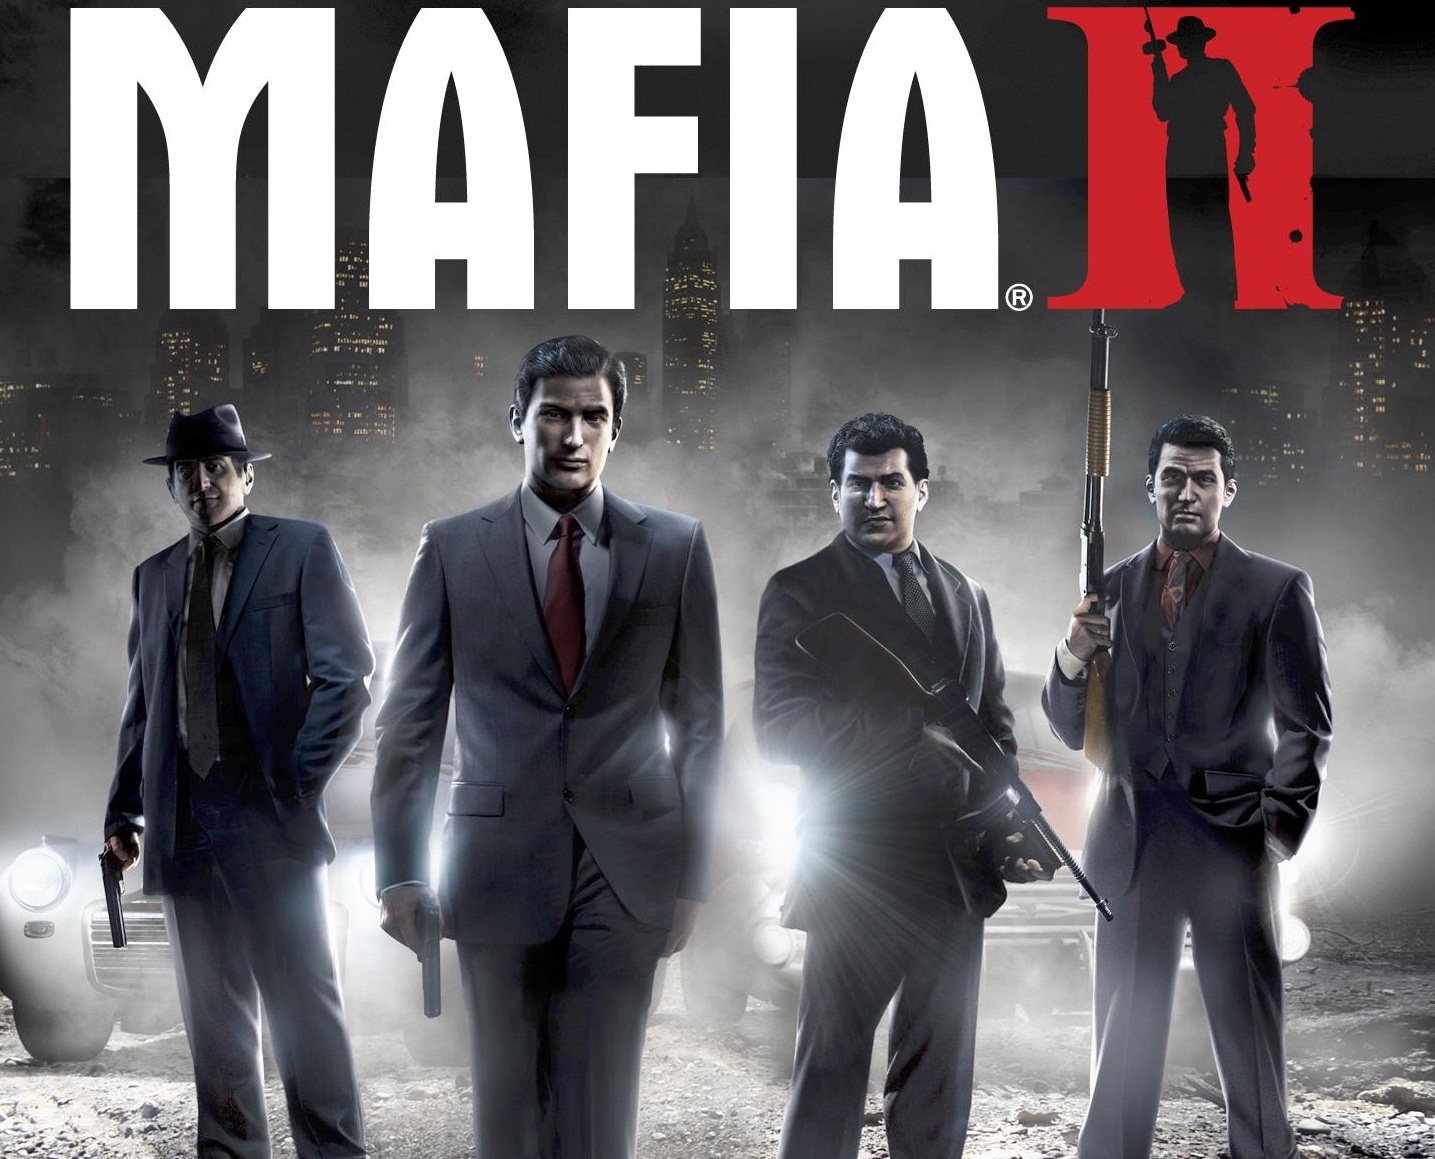 Mafia Games